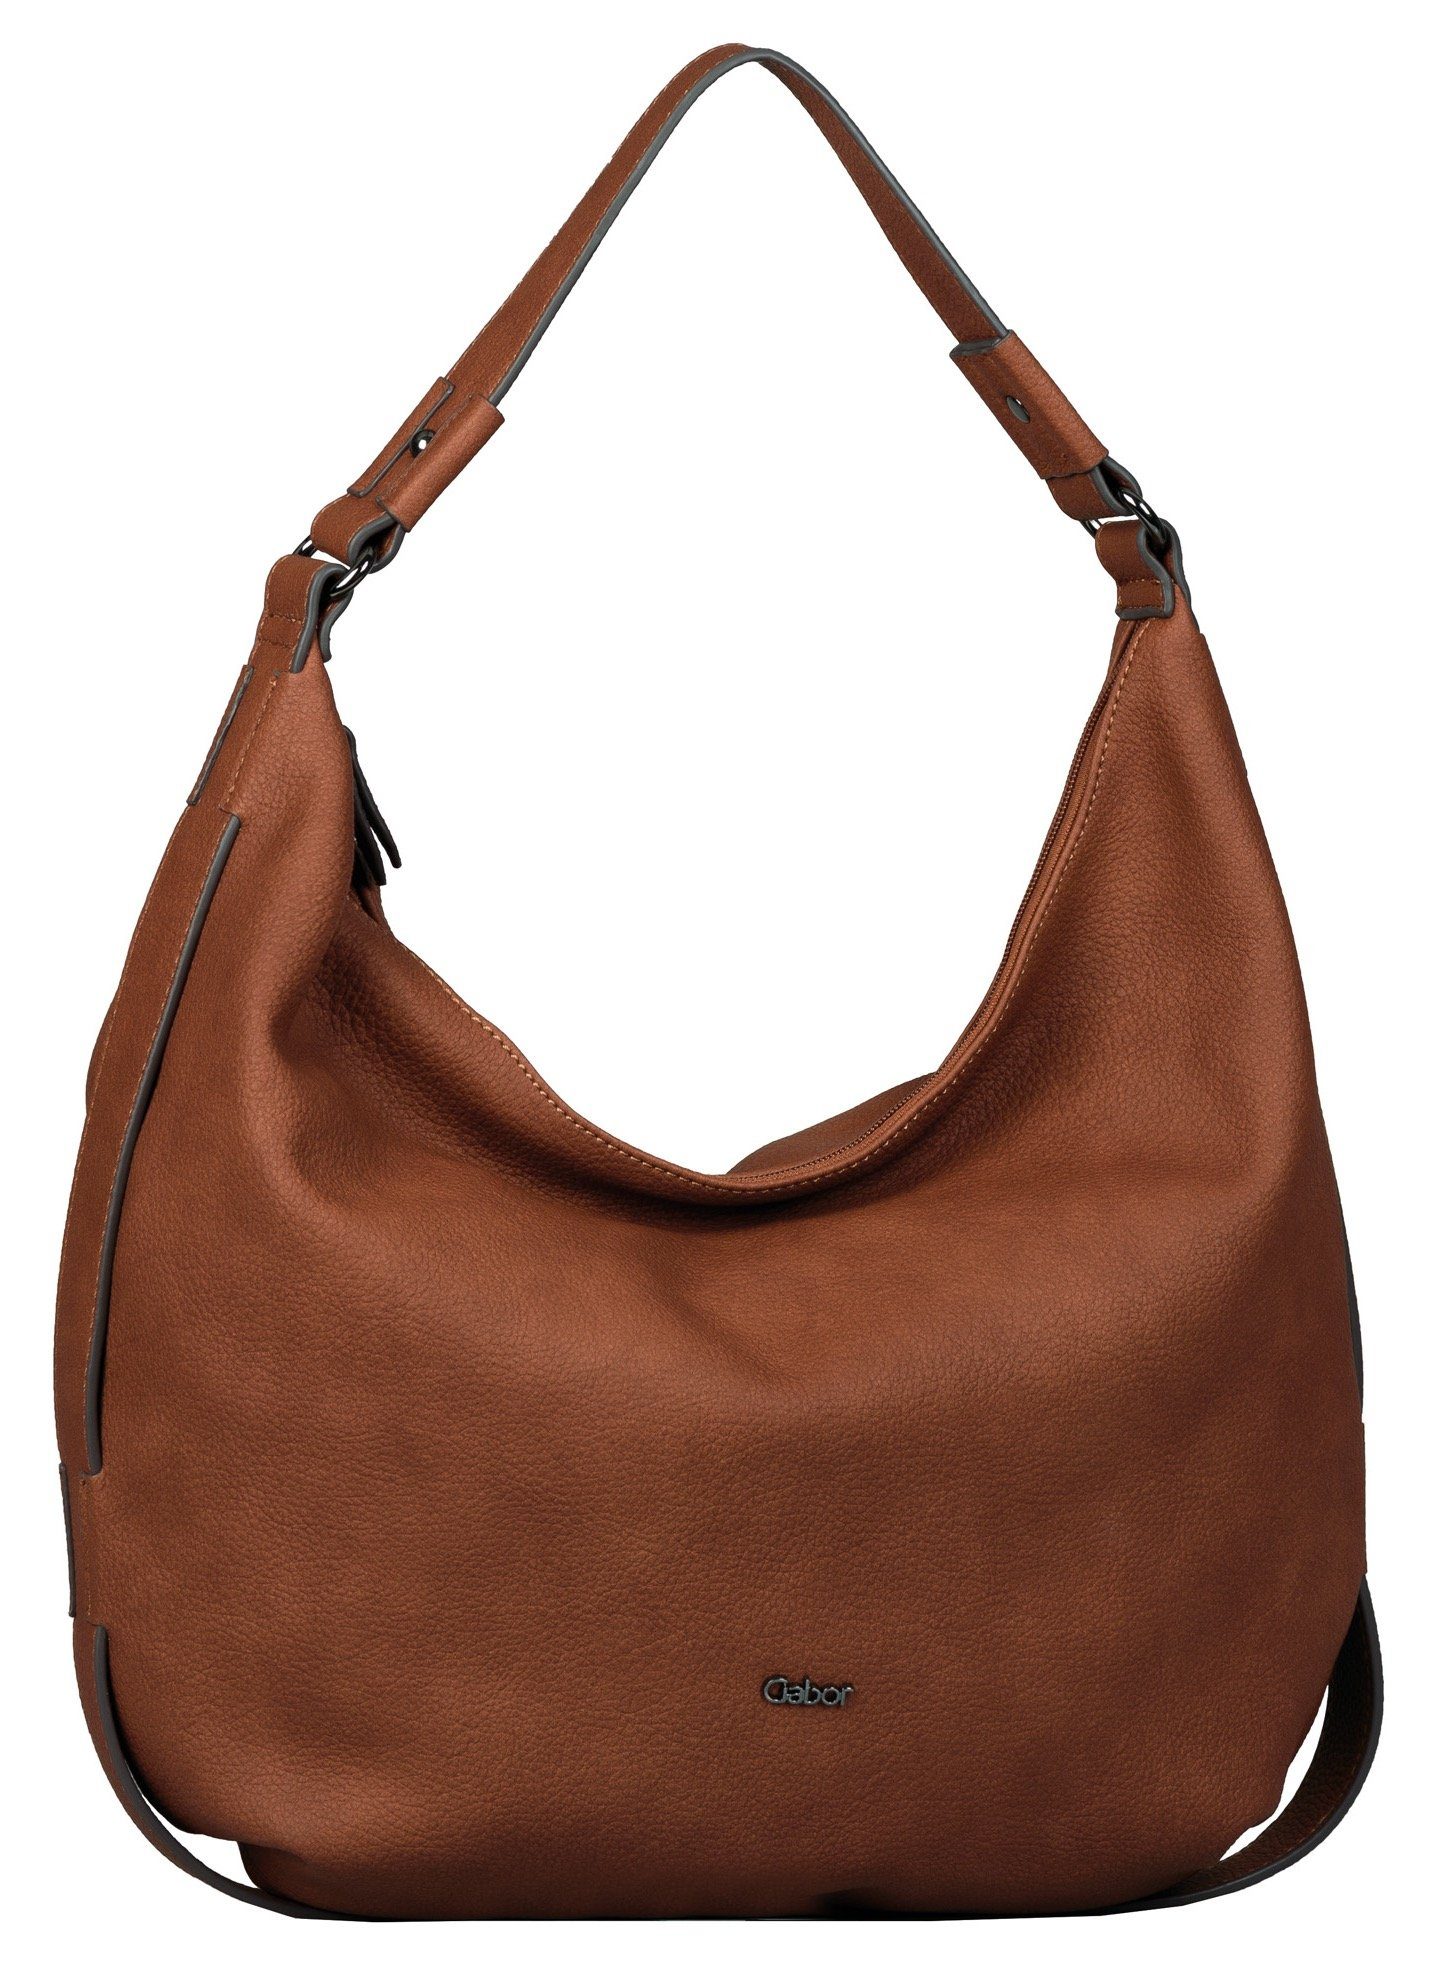 Gabor Handtaschen online kaufen | OTTO